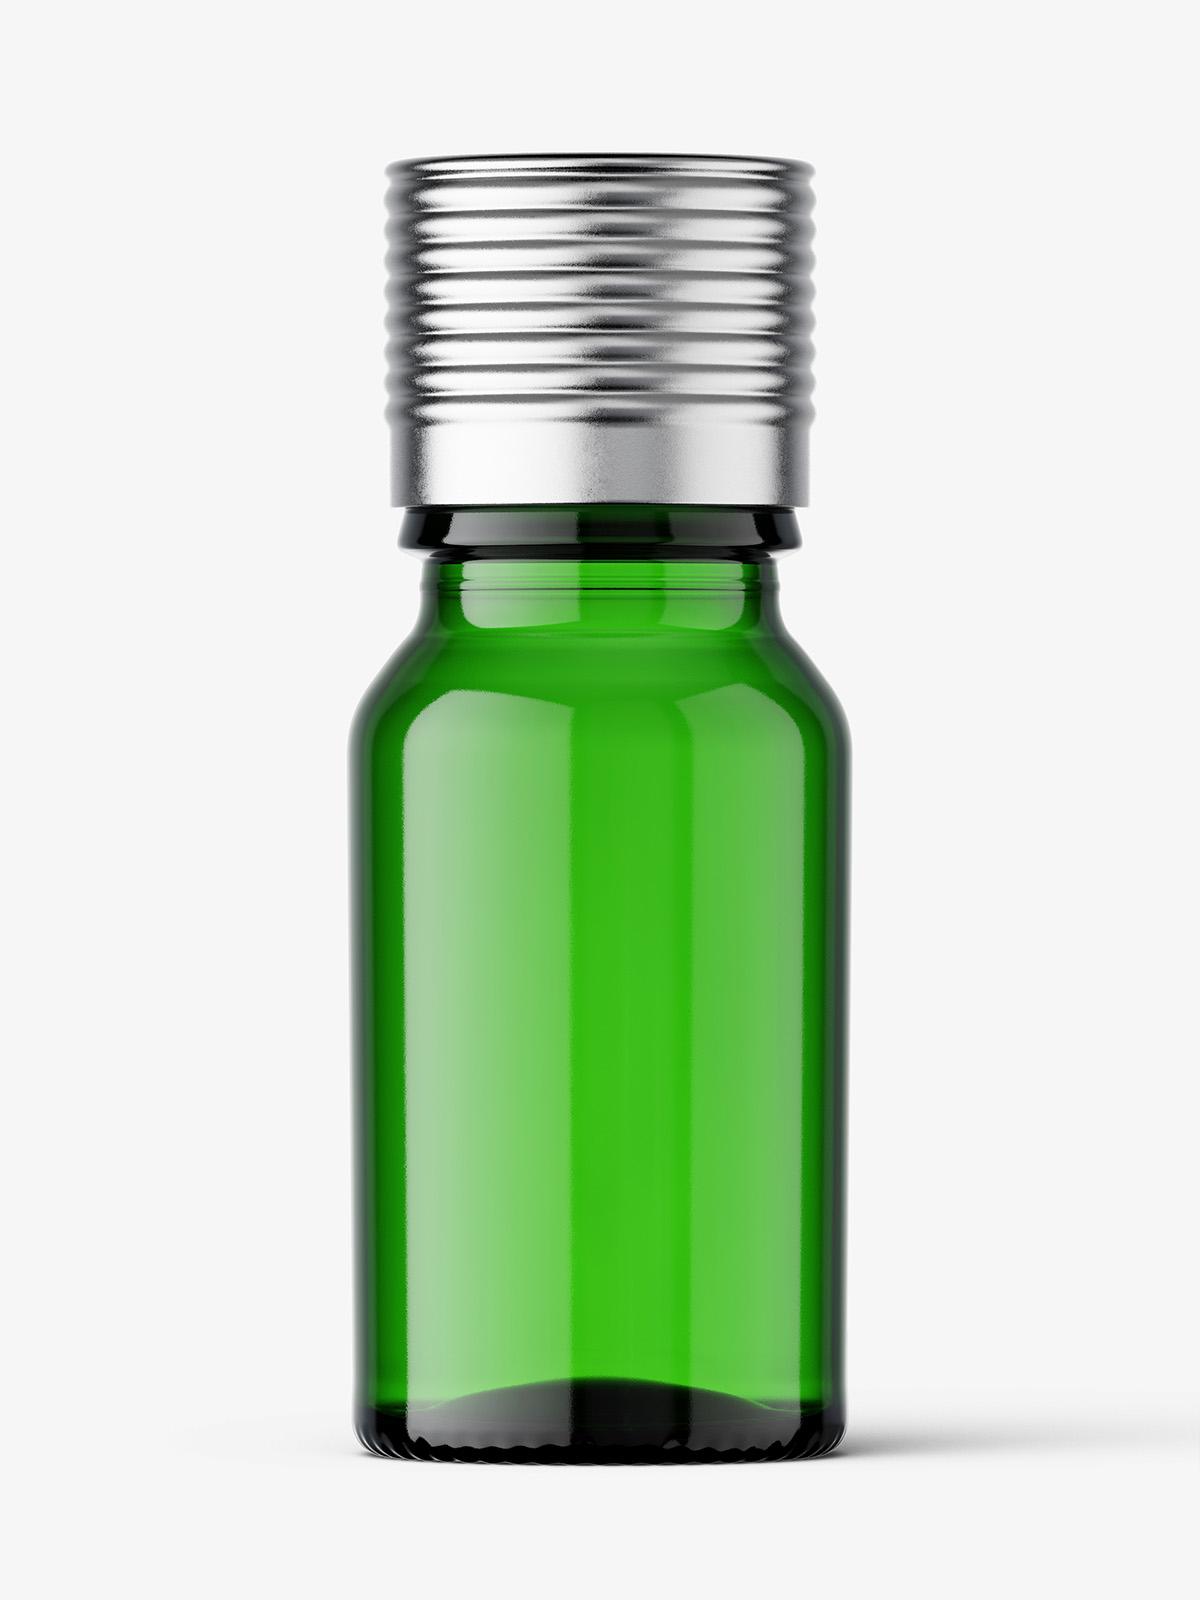 pharmaceutical bottle caps